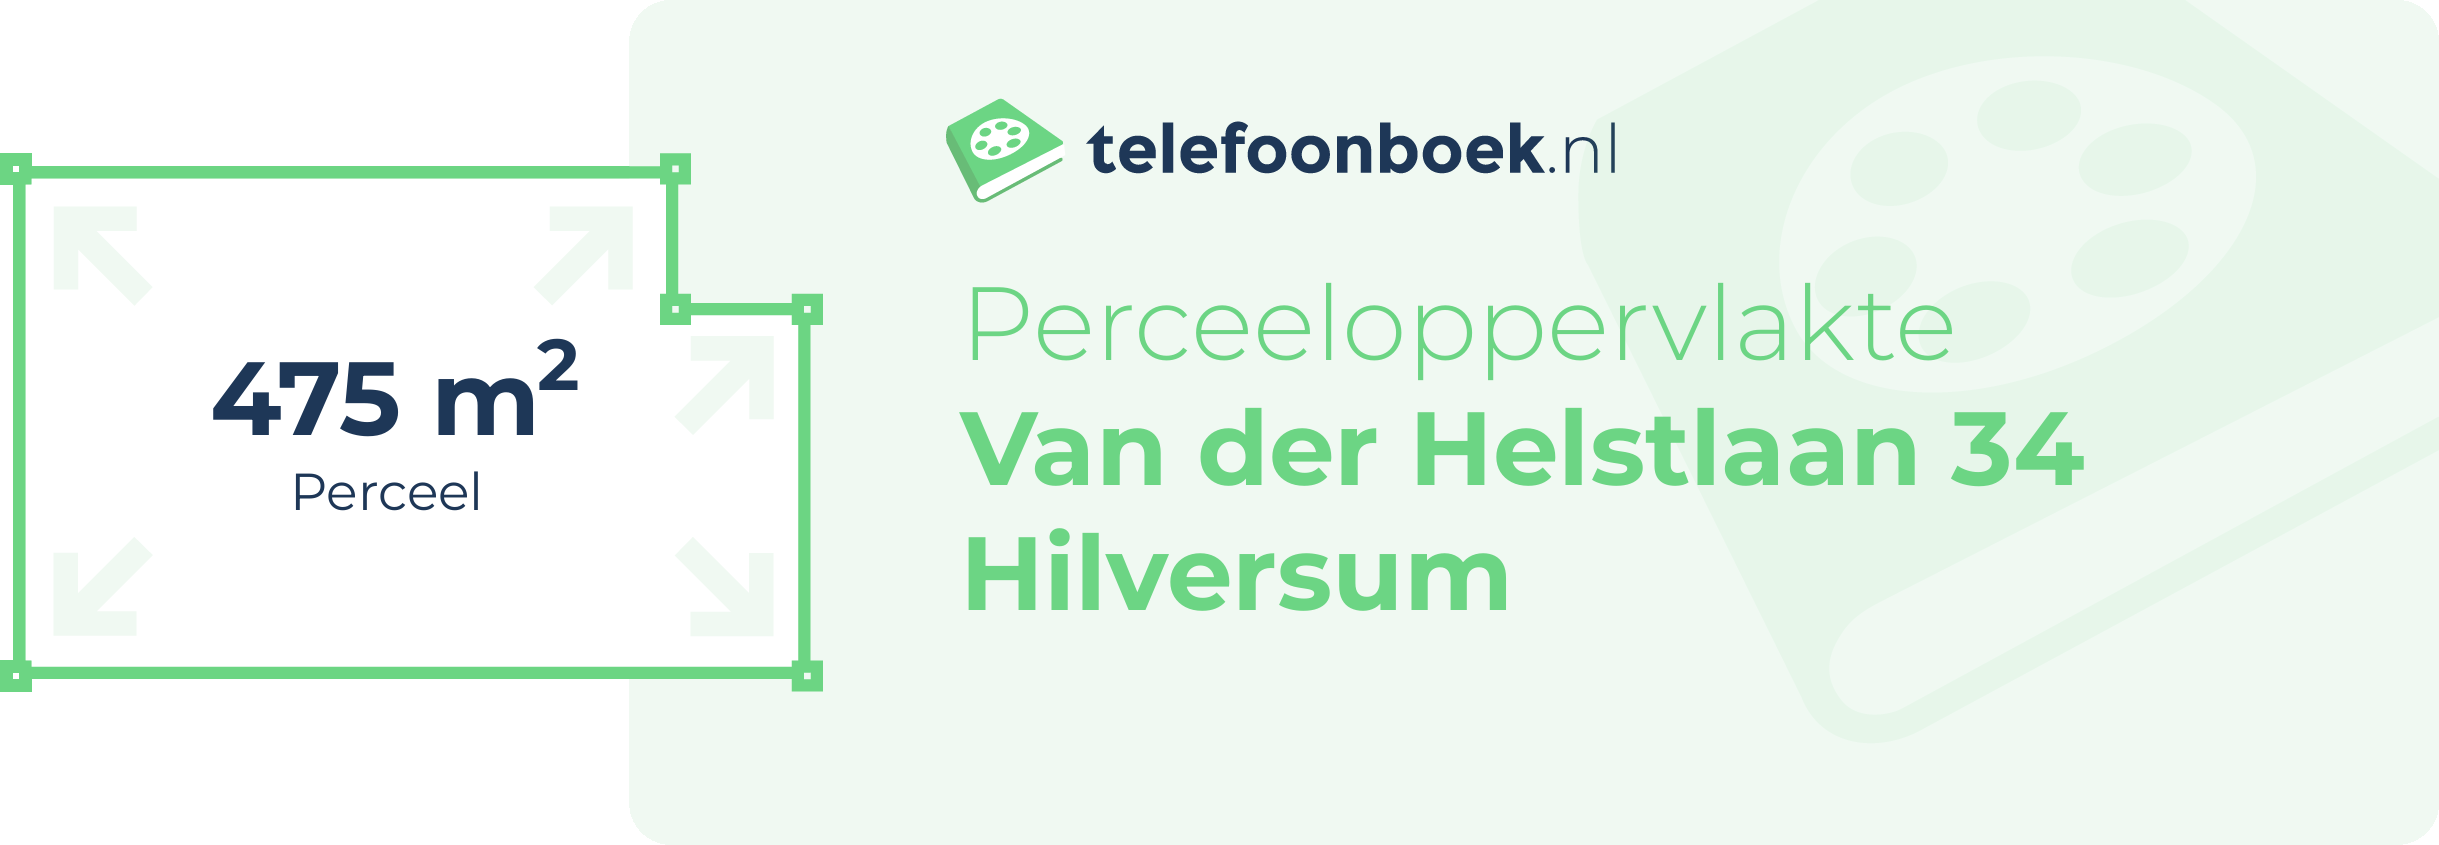 Perceeloppervlakte Van Der Helstlaan 34 Hilversum